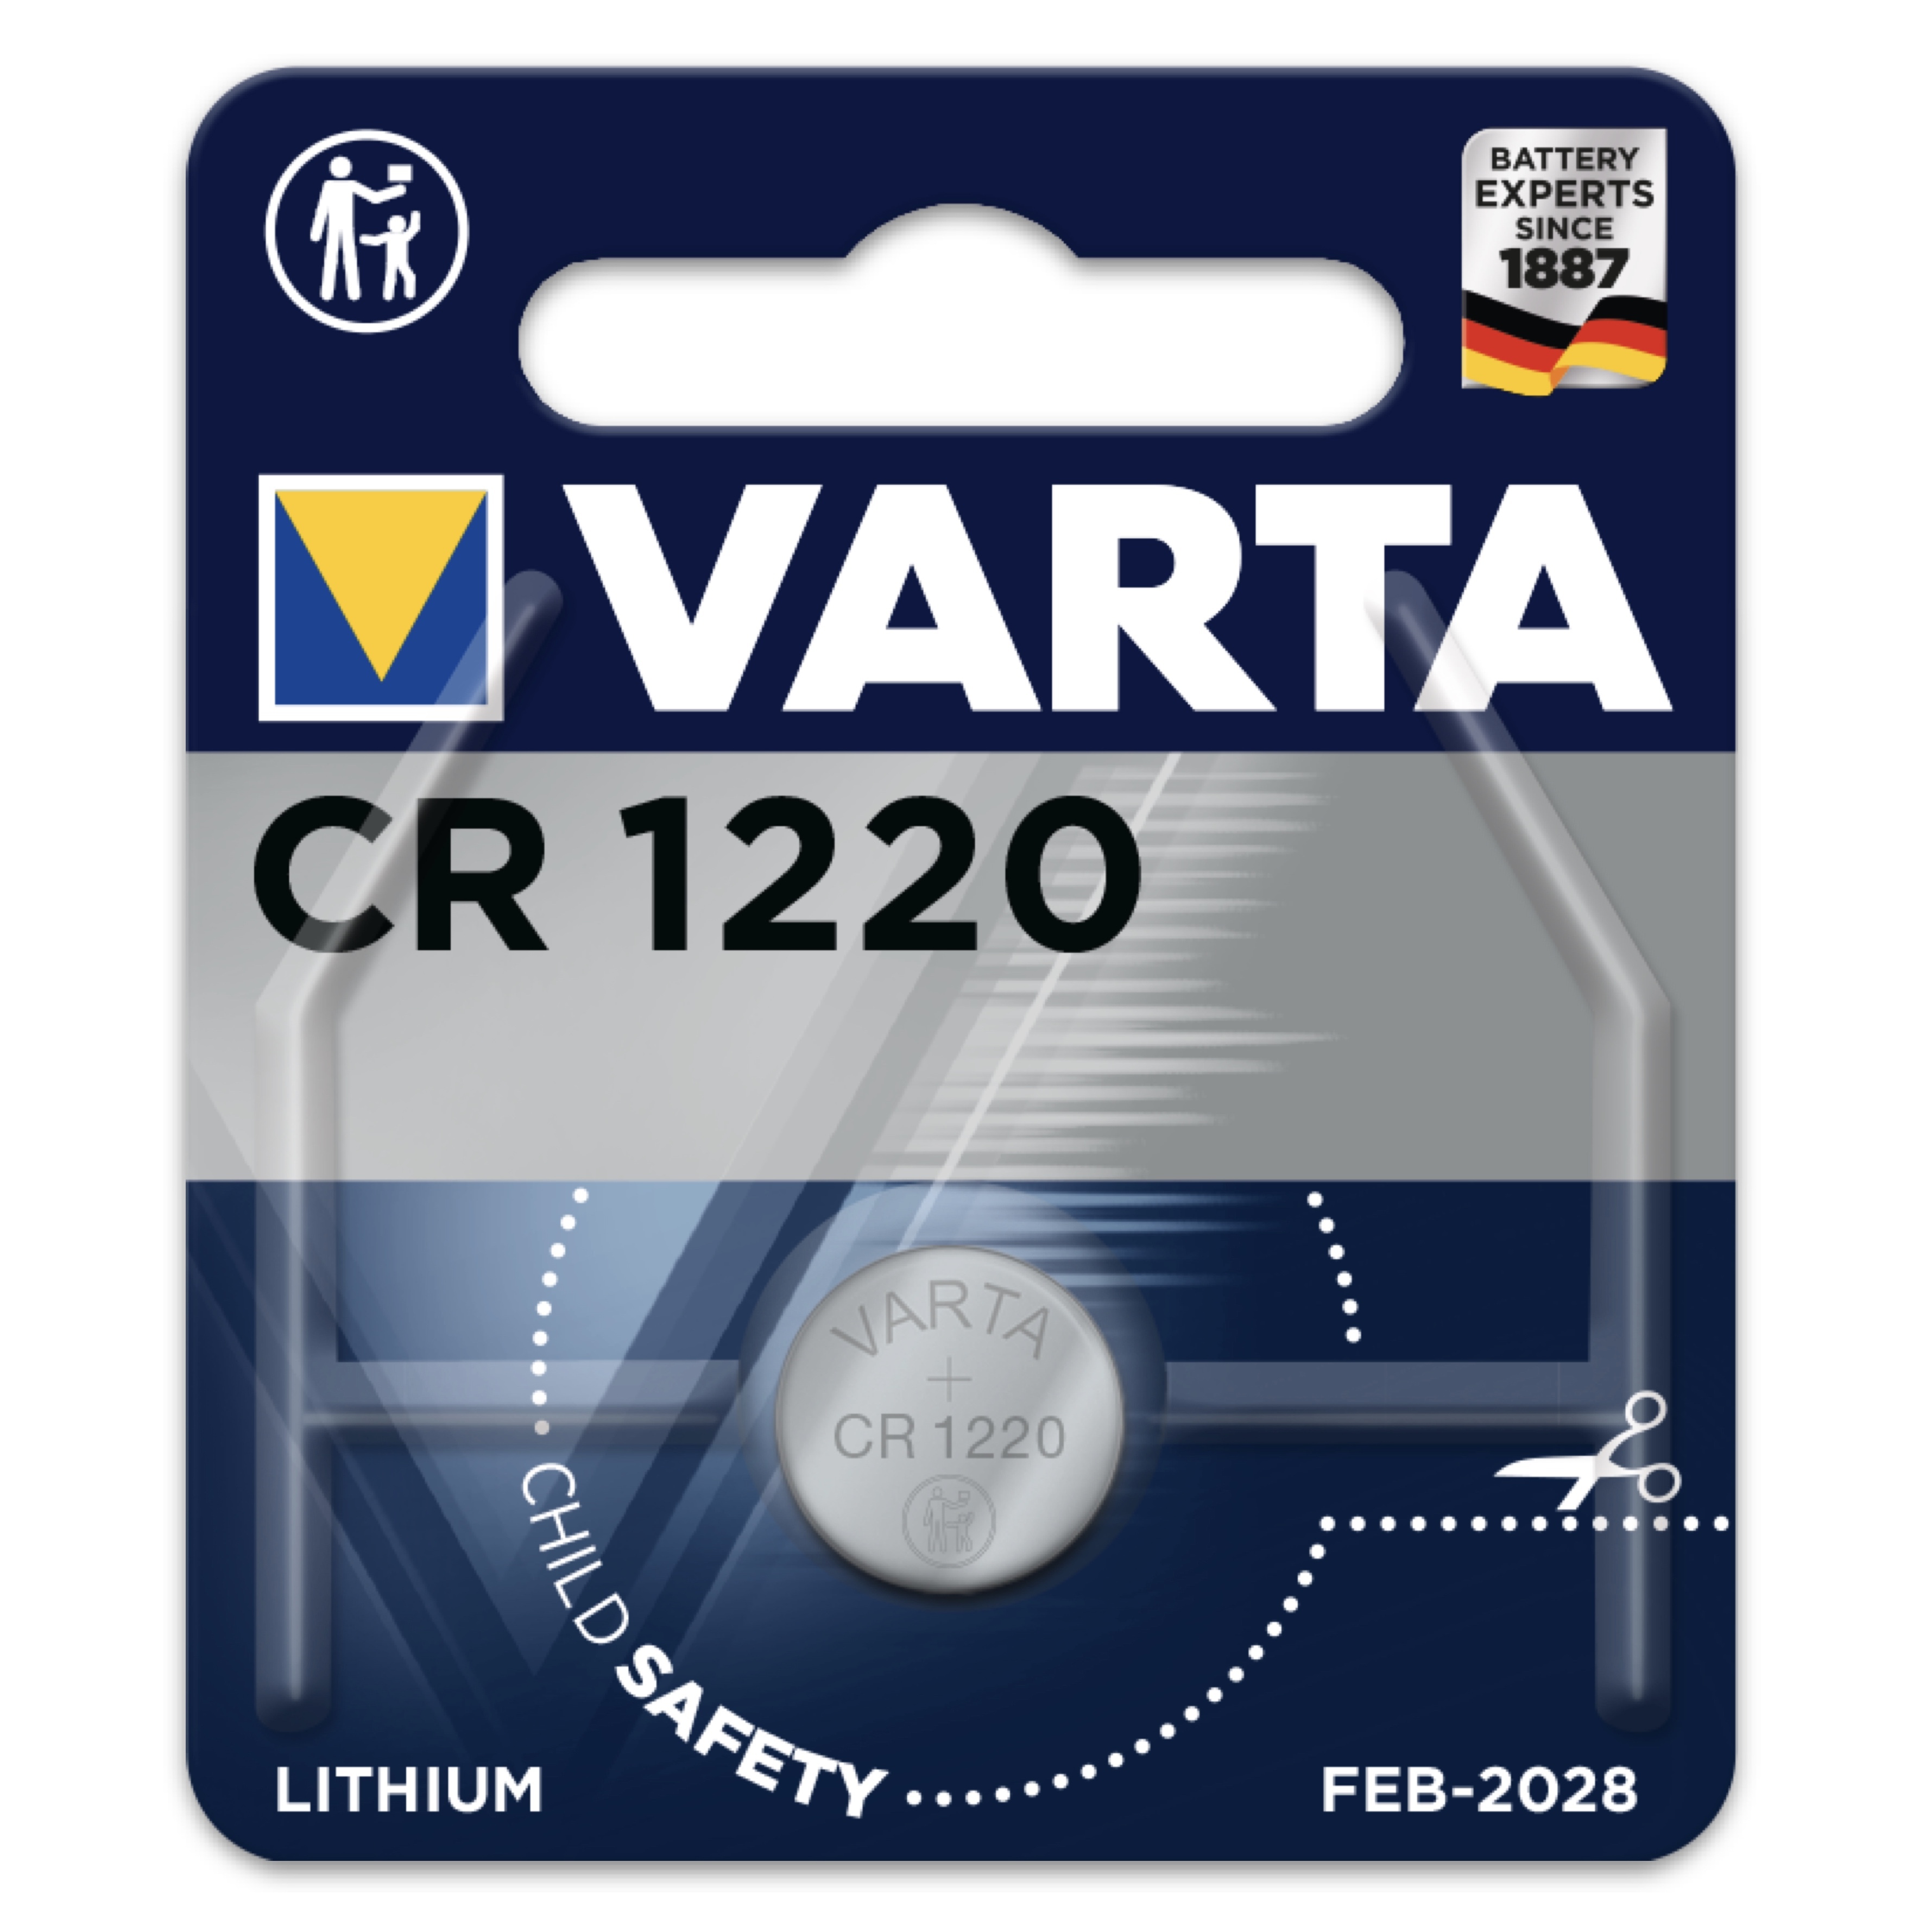 VARTA Knopfzellen CRx 3V Auswahl Blister CR1216 CR1220 CR1225 CR1616 CR1620 CR20 